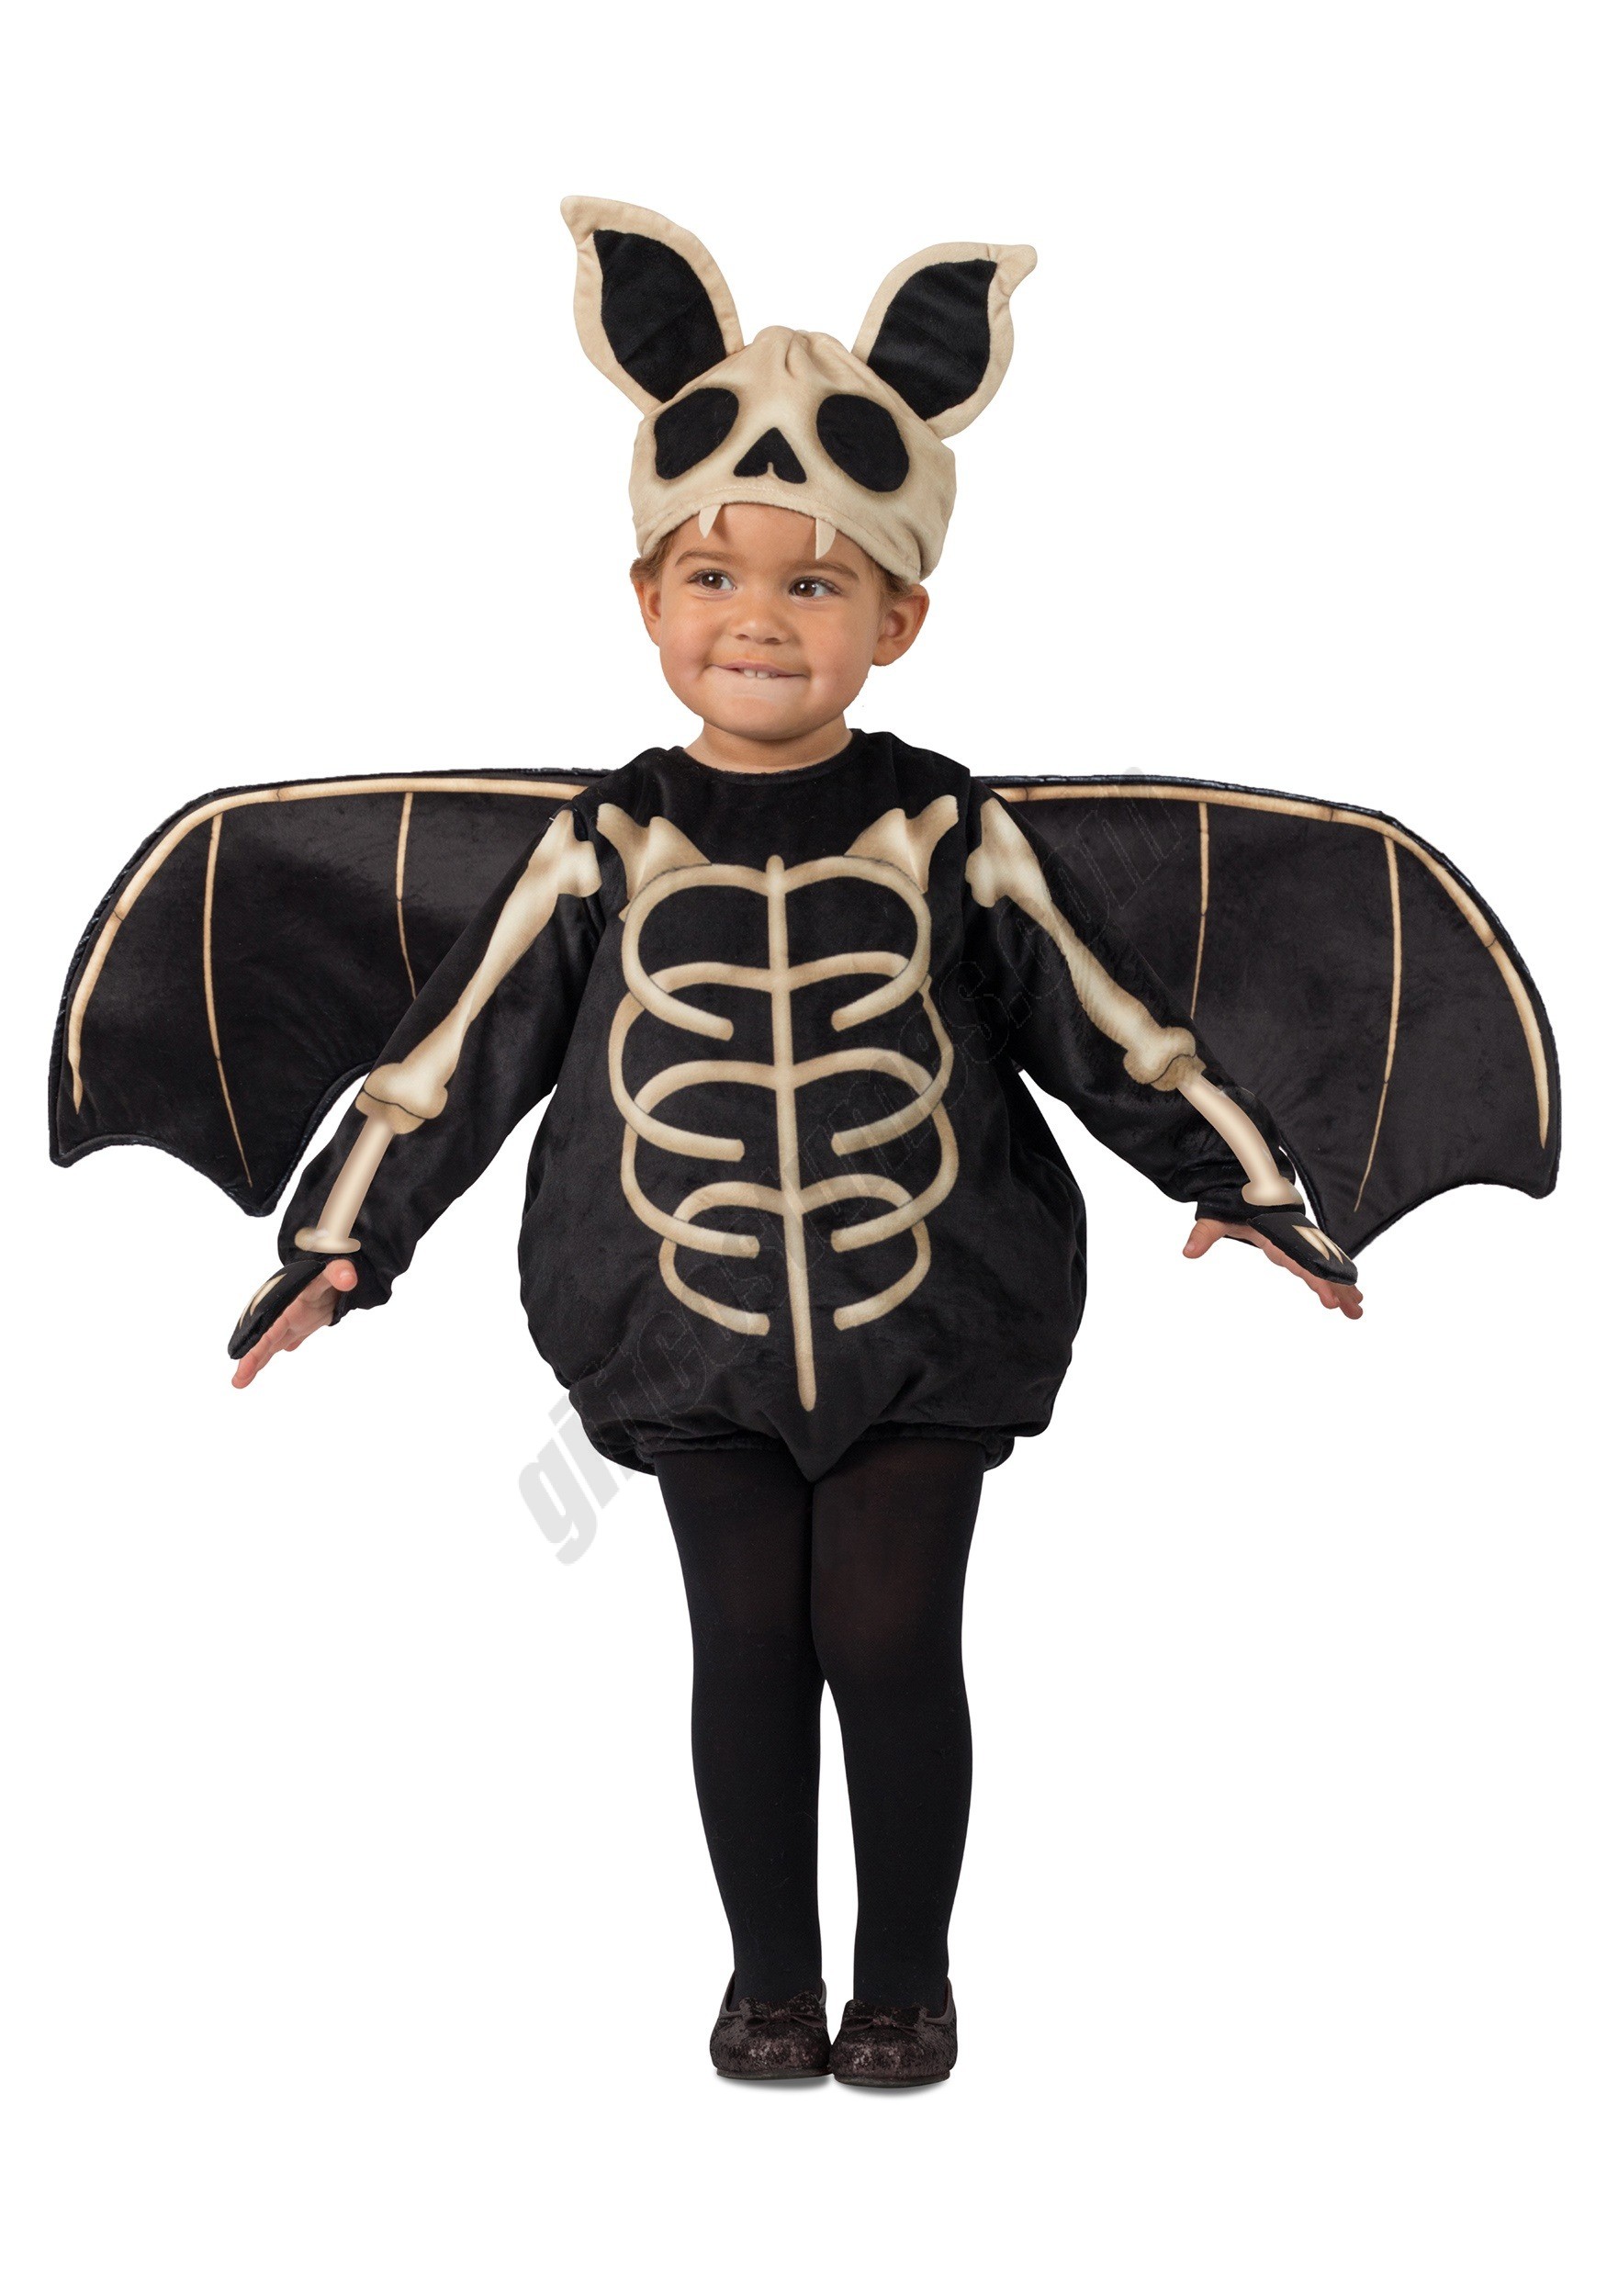 Toddler's Skeleton Bat Costume Promotions - Toddler's Skeleton Bat Costume Promotions